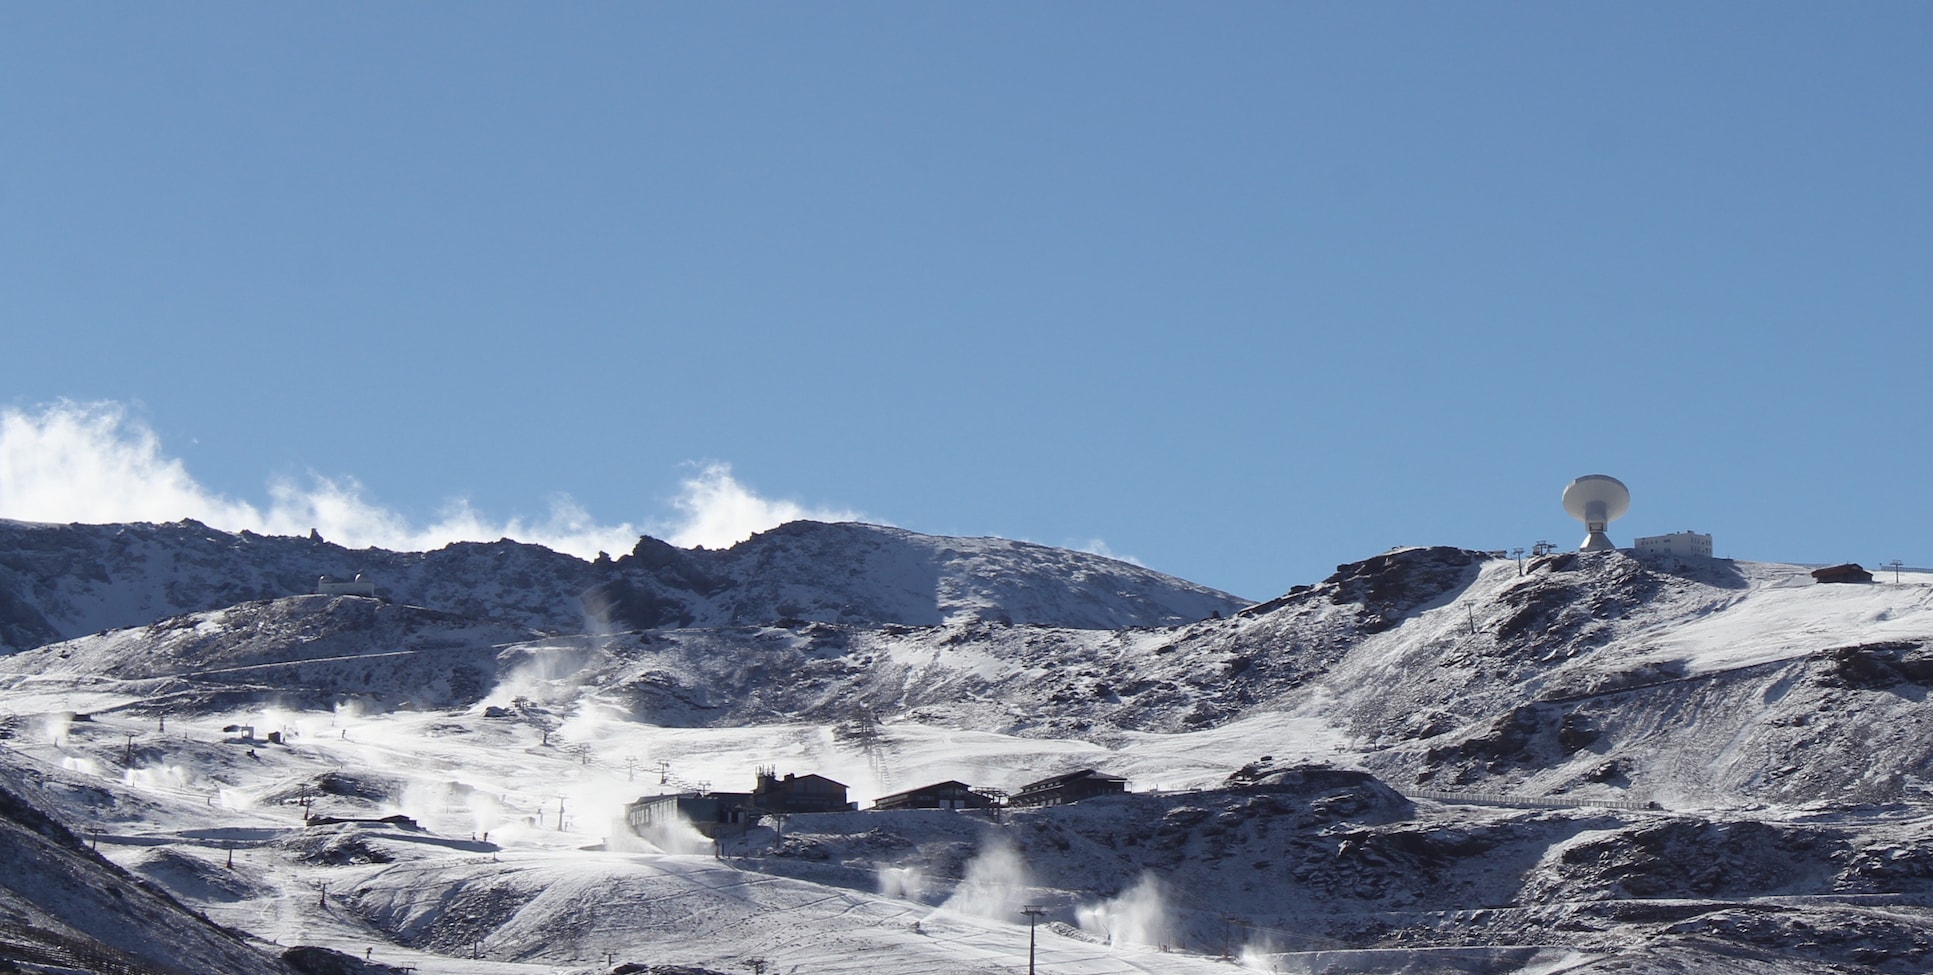 Sierra Nevada pone en marcha el sistema de nieve producida en la Estación de esquí temporada 2015-2016